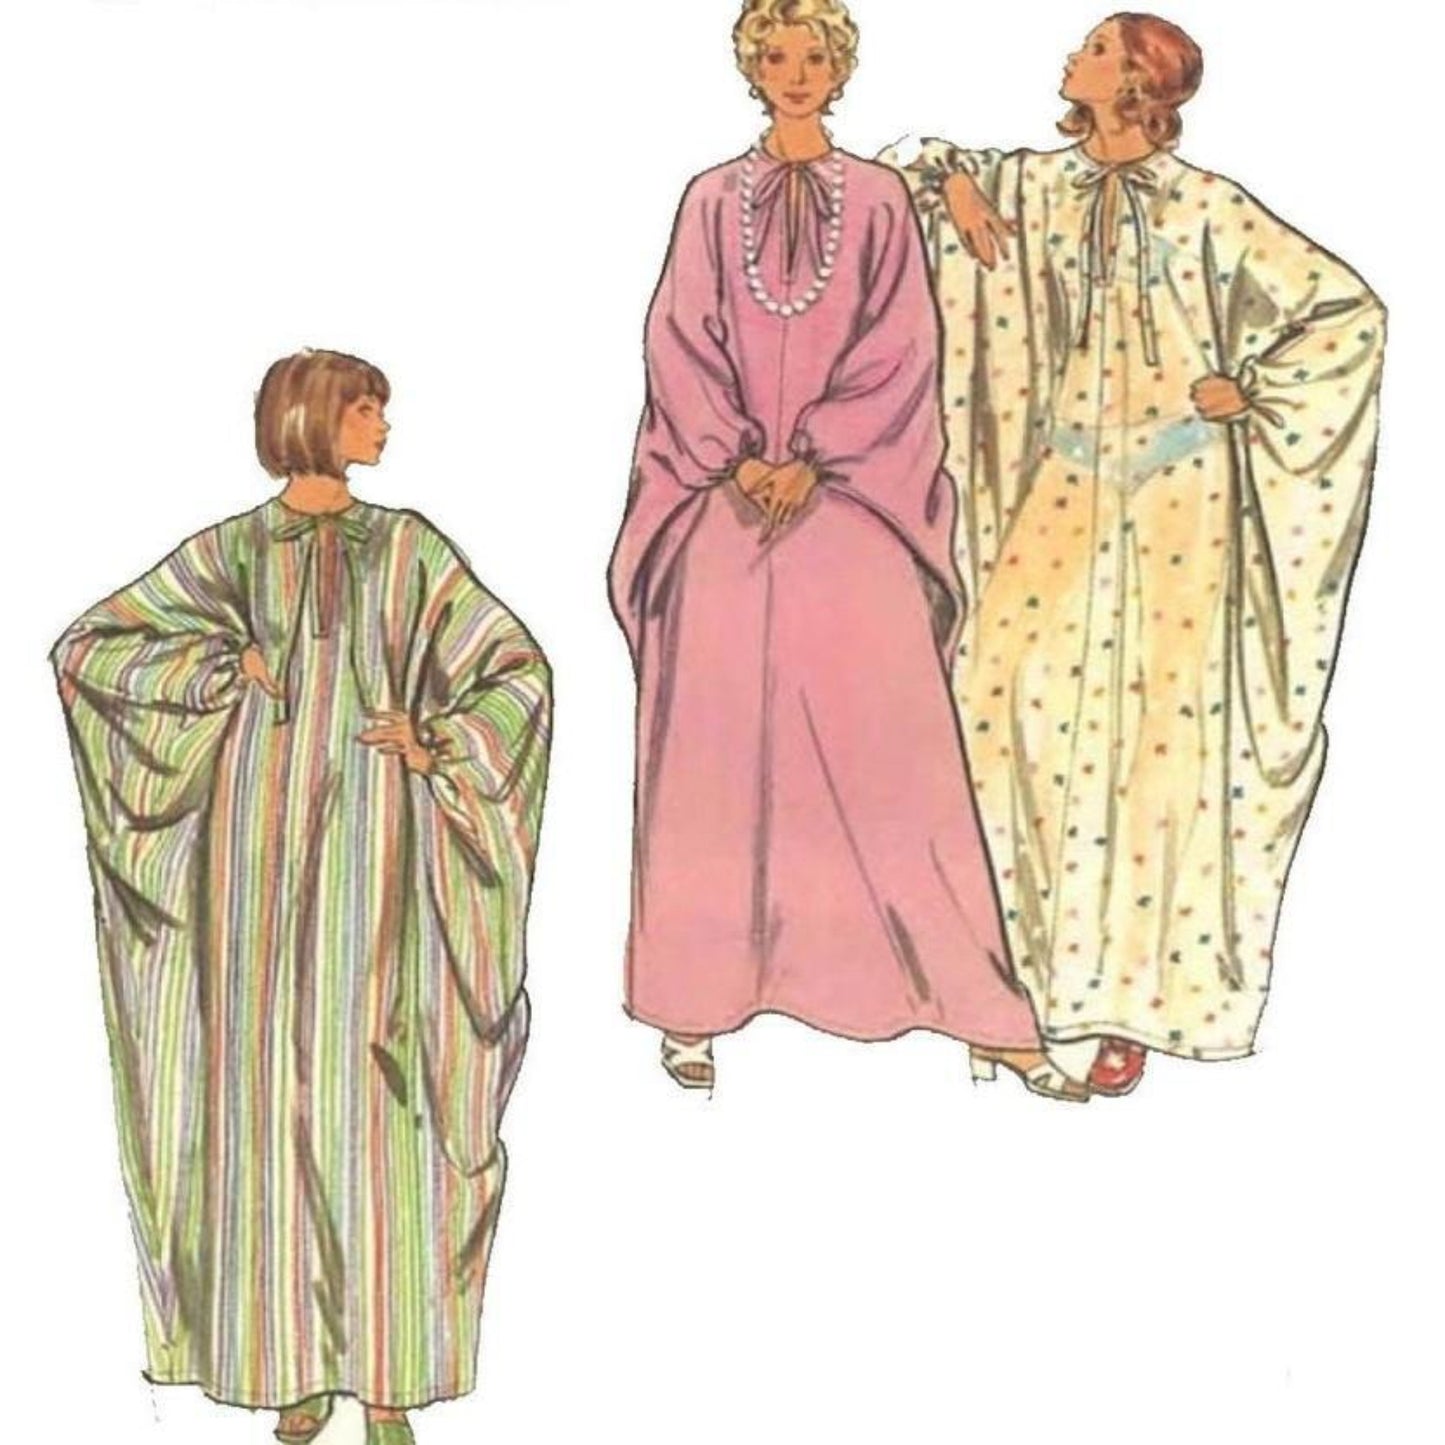 Women wearing kaftans